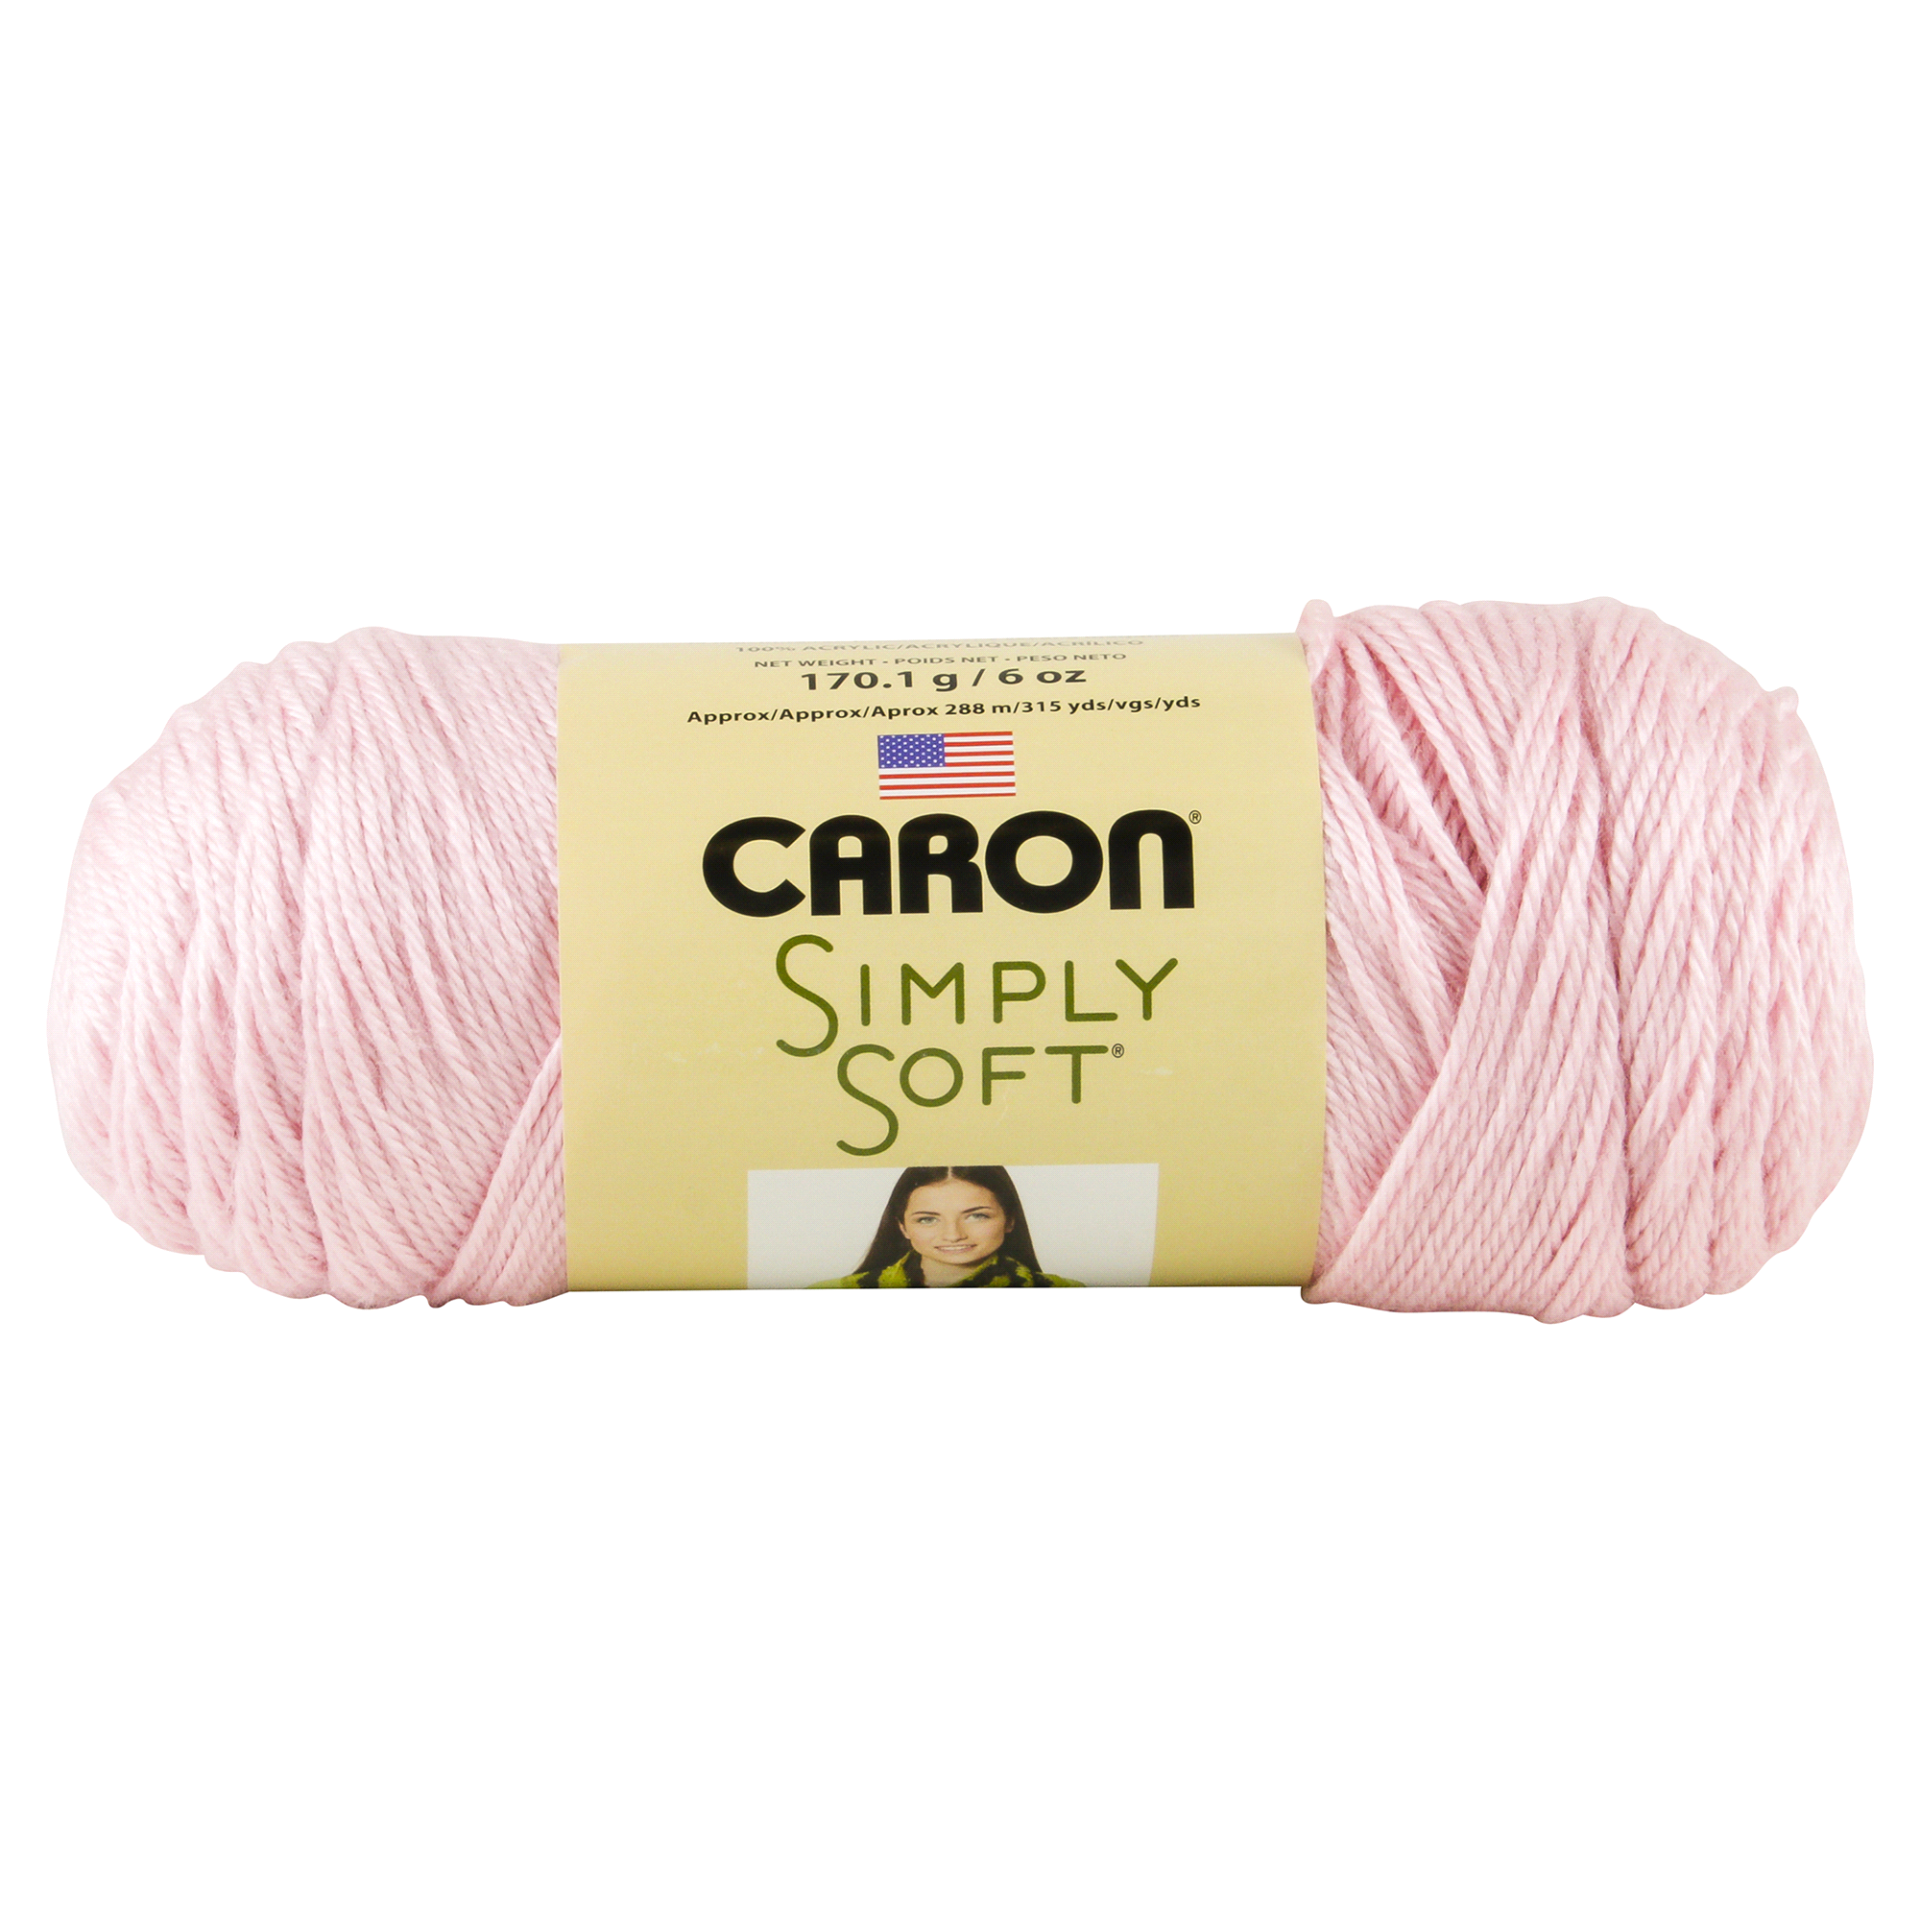 Caron Simply Soft Yarn, Soft Pink, 6 oz